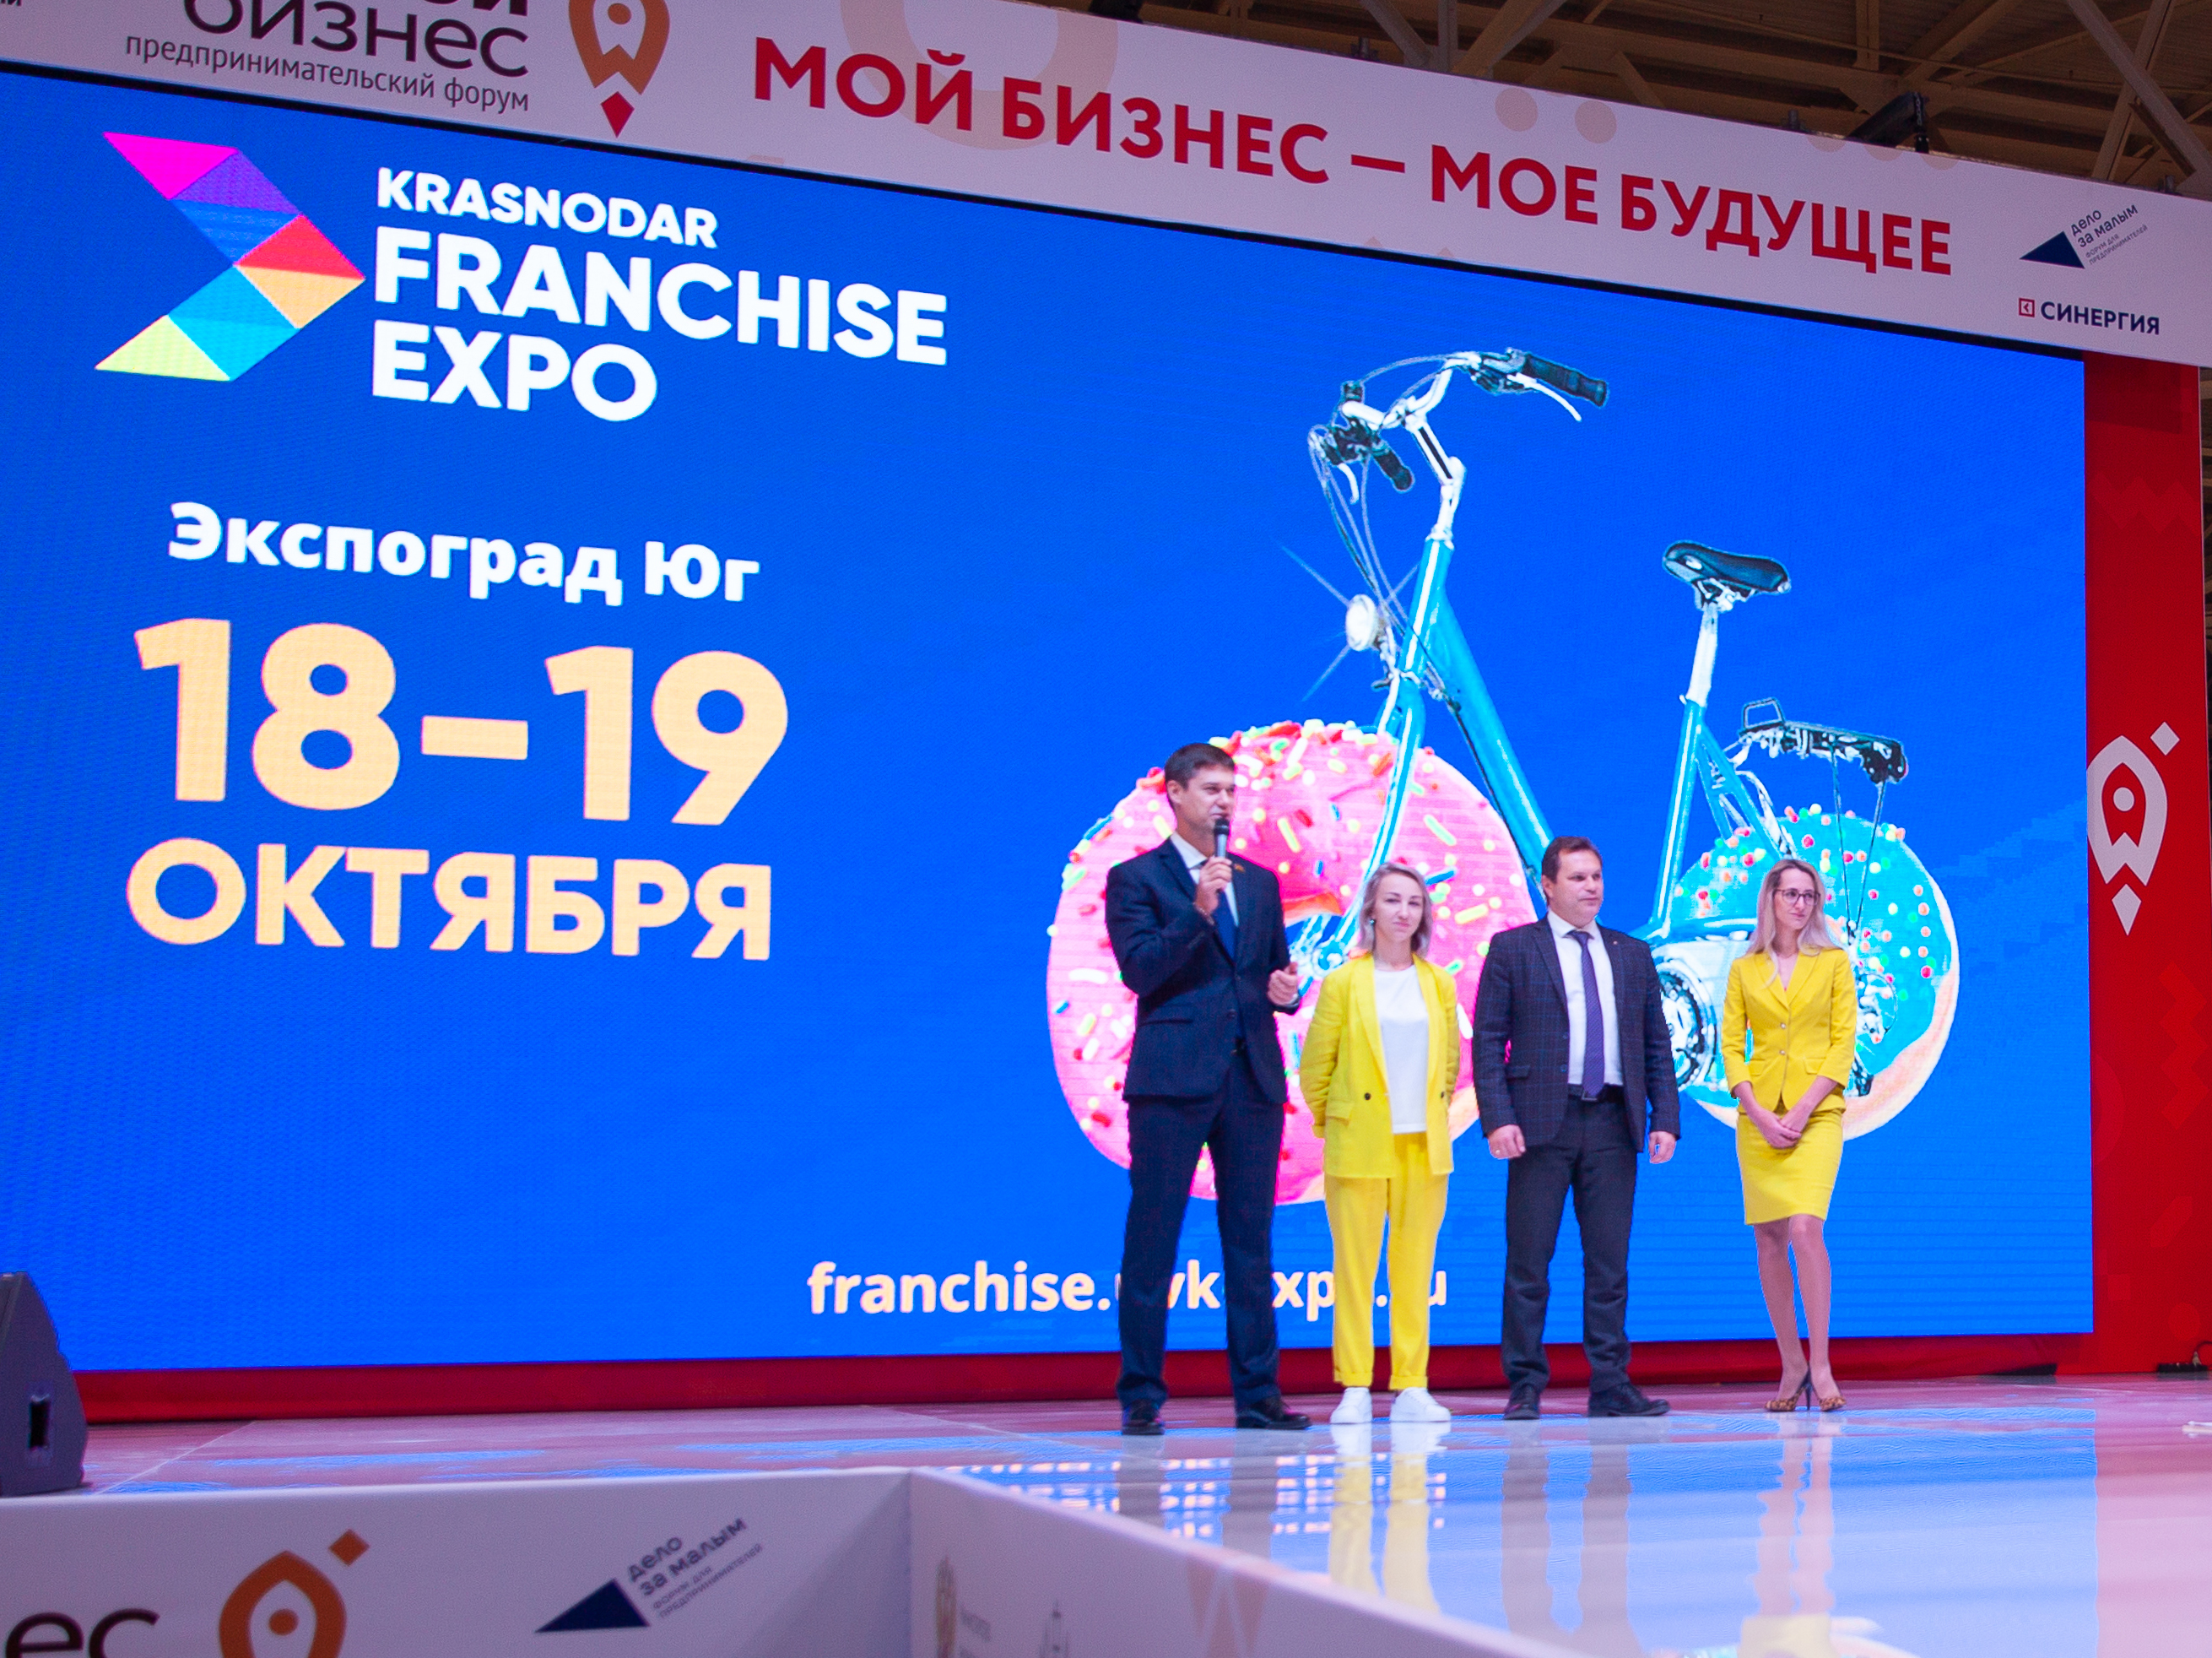 Krasnodar Franchise Expo 2019: крупнейшая выставка франчайзинговых концепций на Юге России